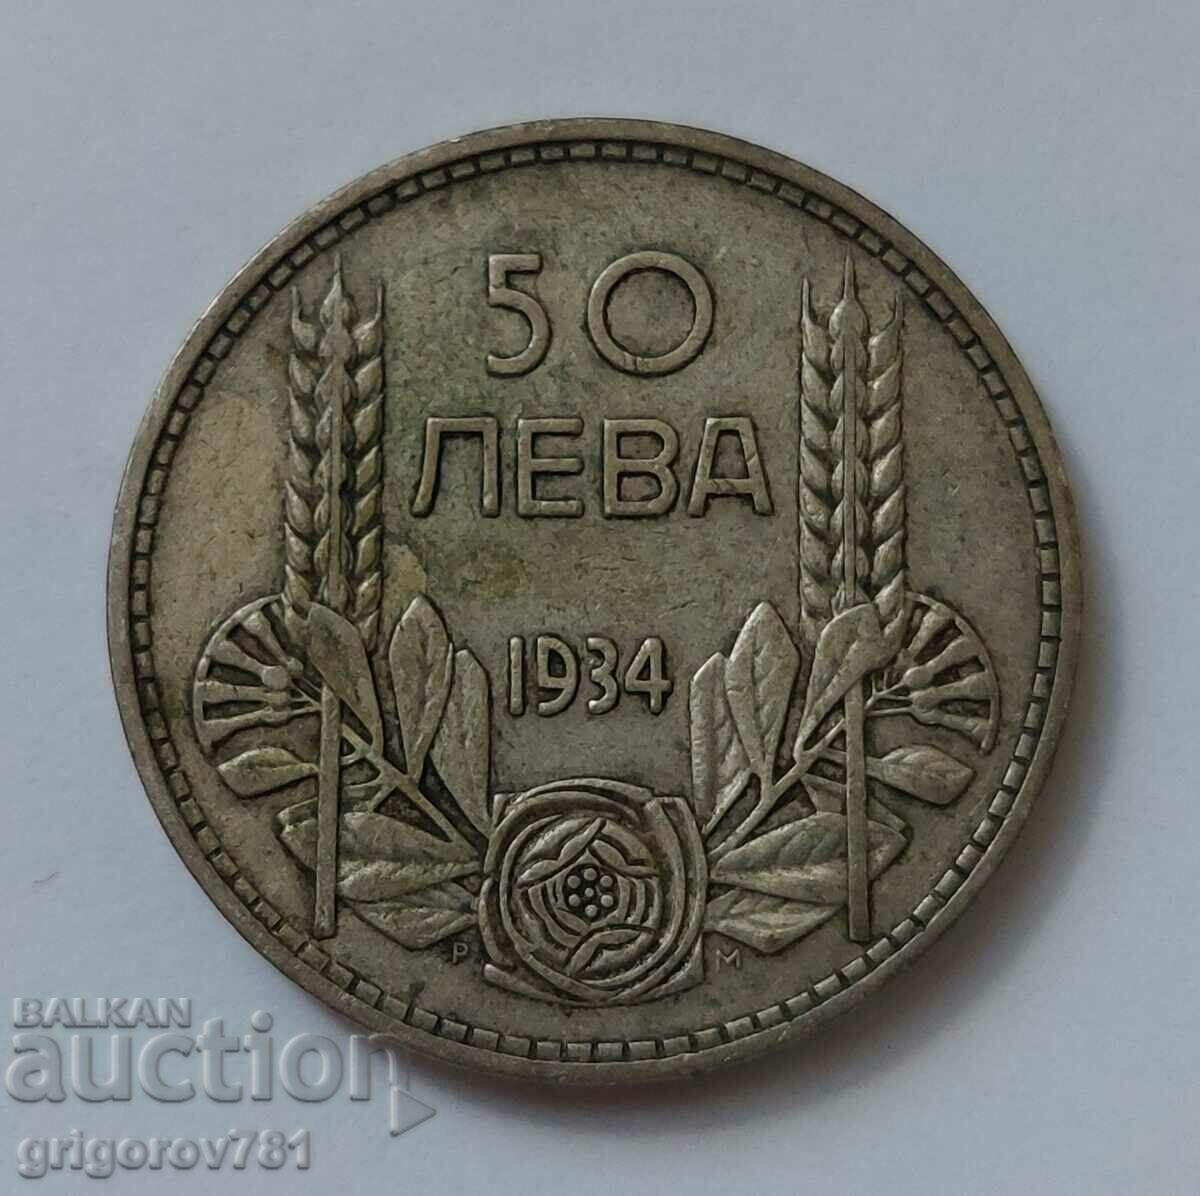 50 leva silver Bulgaria 1934 - silver coin #8